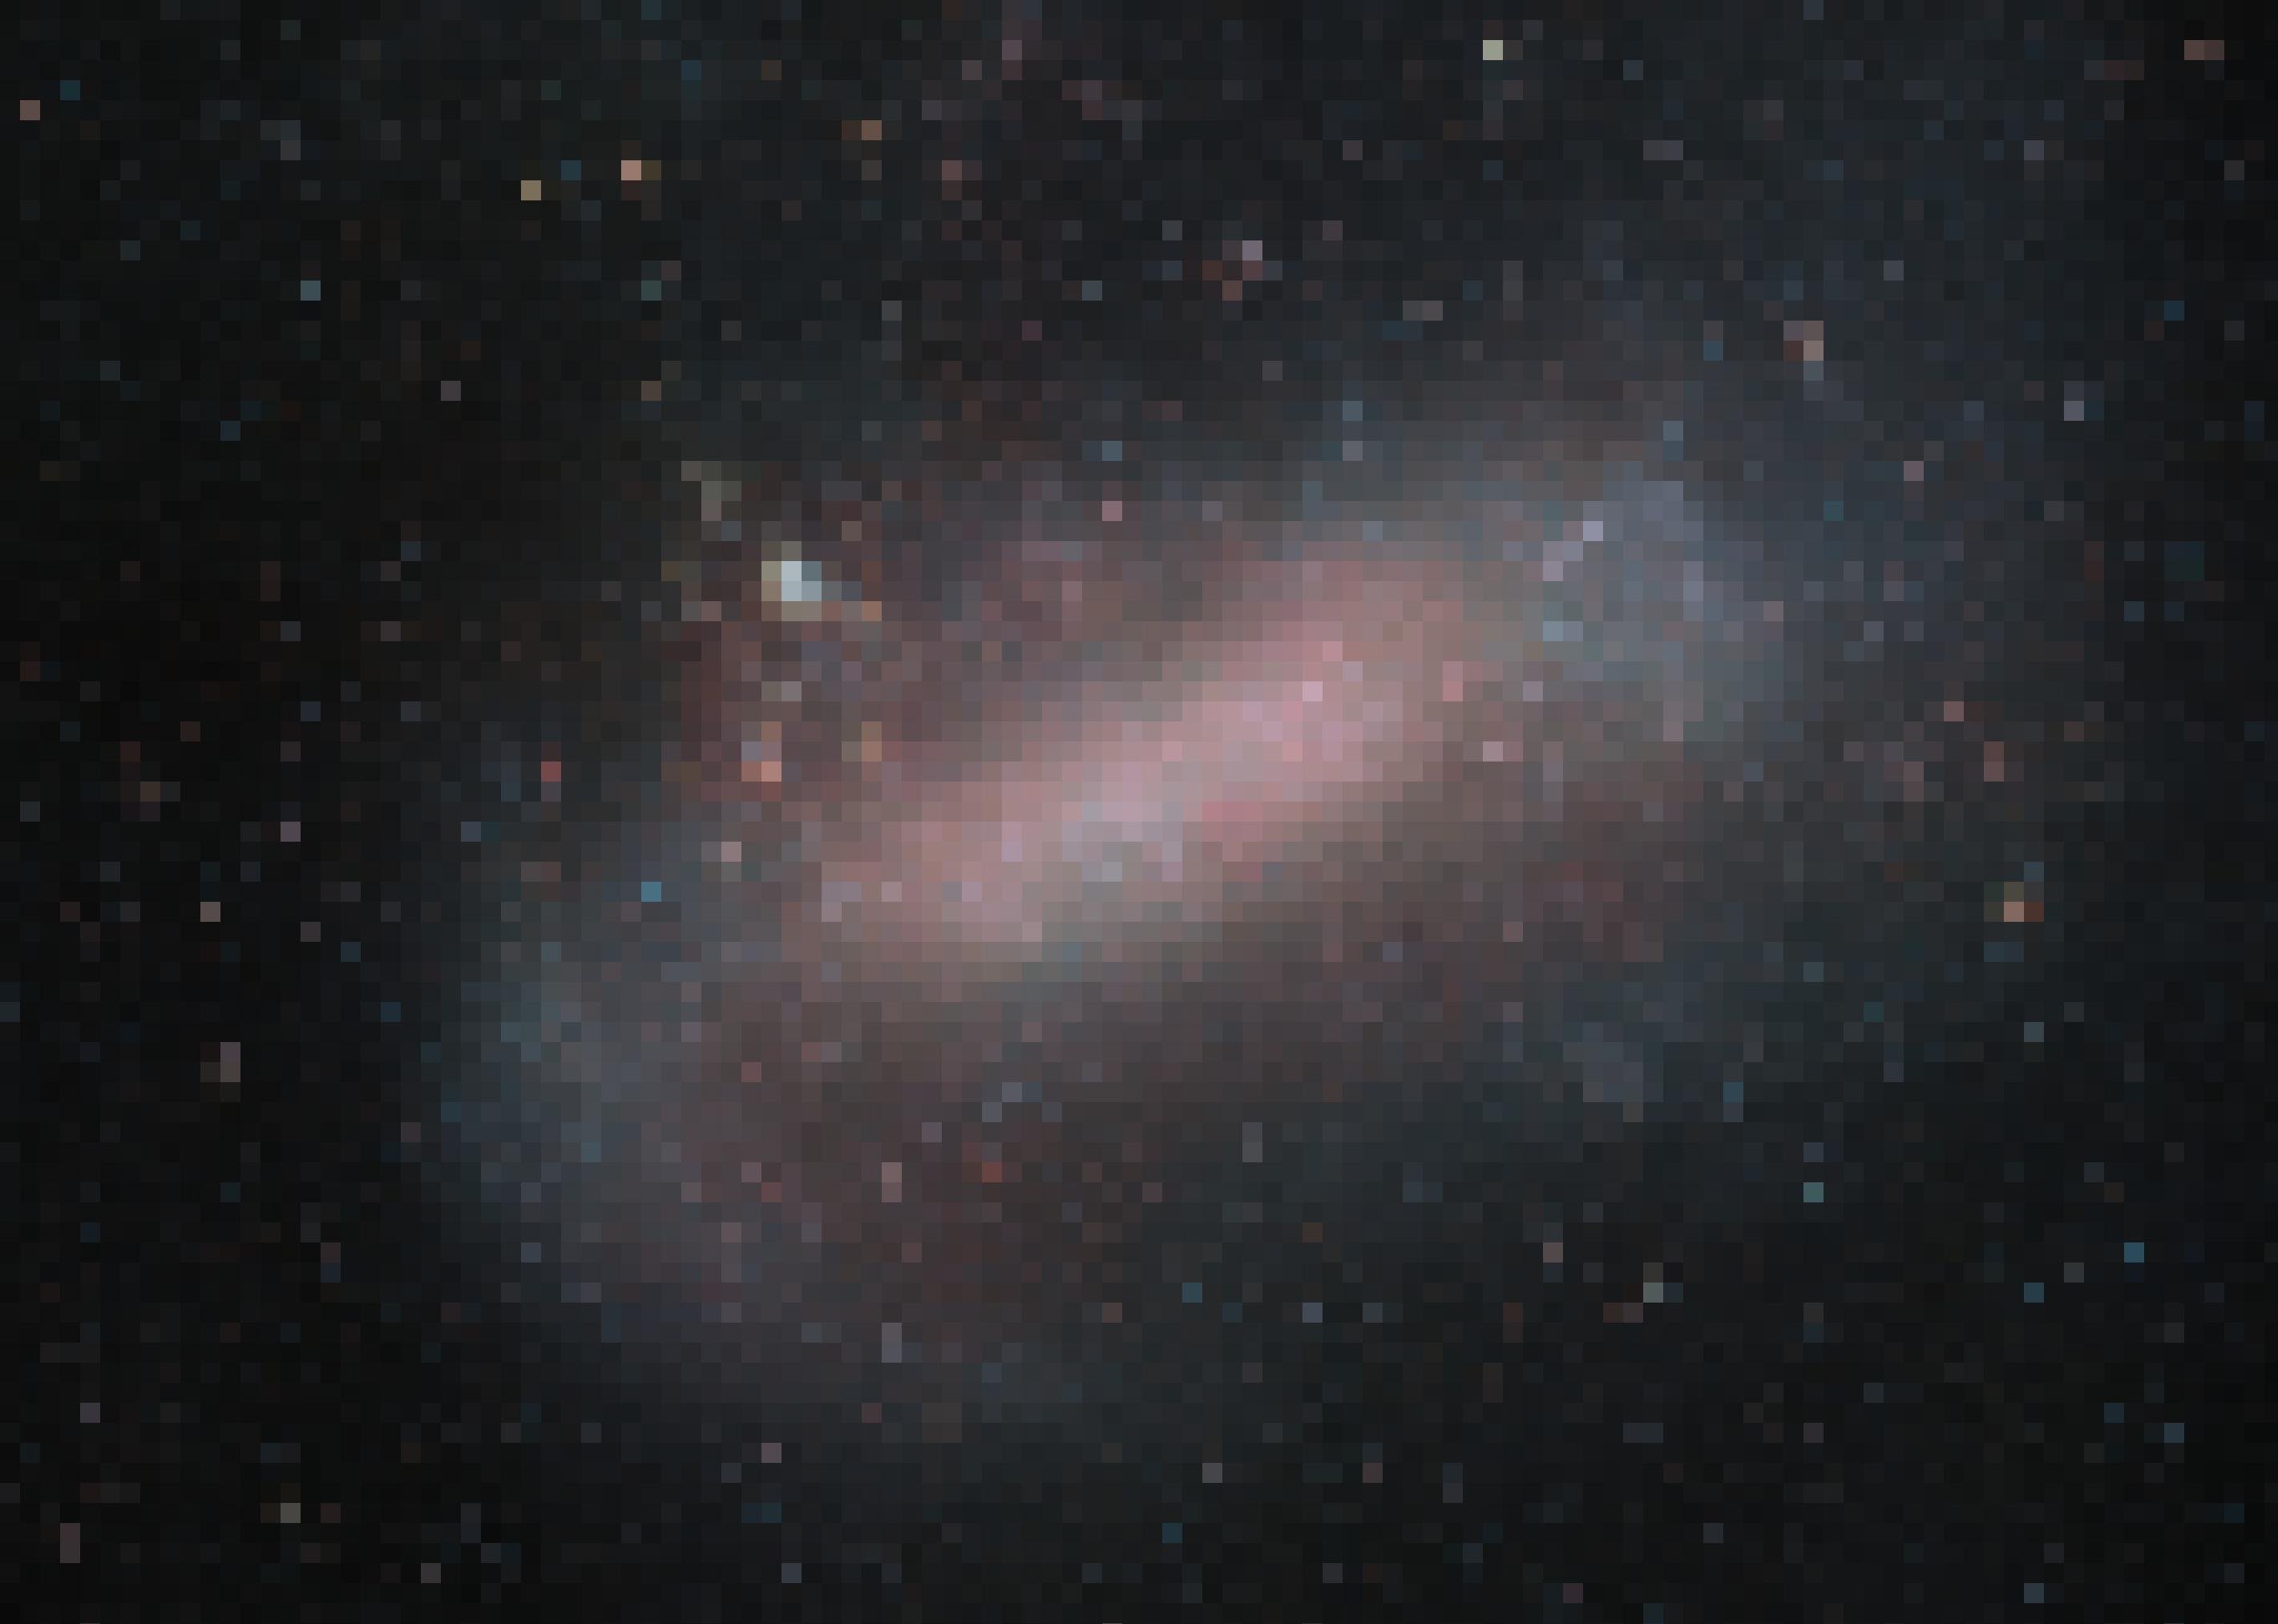 Zu erkennen ist eine große, wenig geordnete Ansammlung von Sternen, die sich in der Bildmitte konzentrieren und dort vorwiegend rötlich sind, aber auch weiter außen befinden, dort mehr bläulich oder weiß gefärbt. Es handelt sich um die Große Magellansche Wolke, eine Zwerggalaxie, die unsere Milchstraße begleitet, aber im Gegensatz zu dieser keine komplexe Struktur erkennen lässt. Wahrscheinlich sind die größeren Spiralgalaxien einst durch Fusionen solcher Zwerggalaxien entstanden. Aufgenommen wurde das Foto vom VISTA-Teleskop der ESO auf dem Cerro Paranal in Chile.